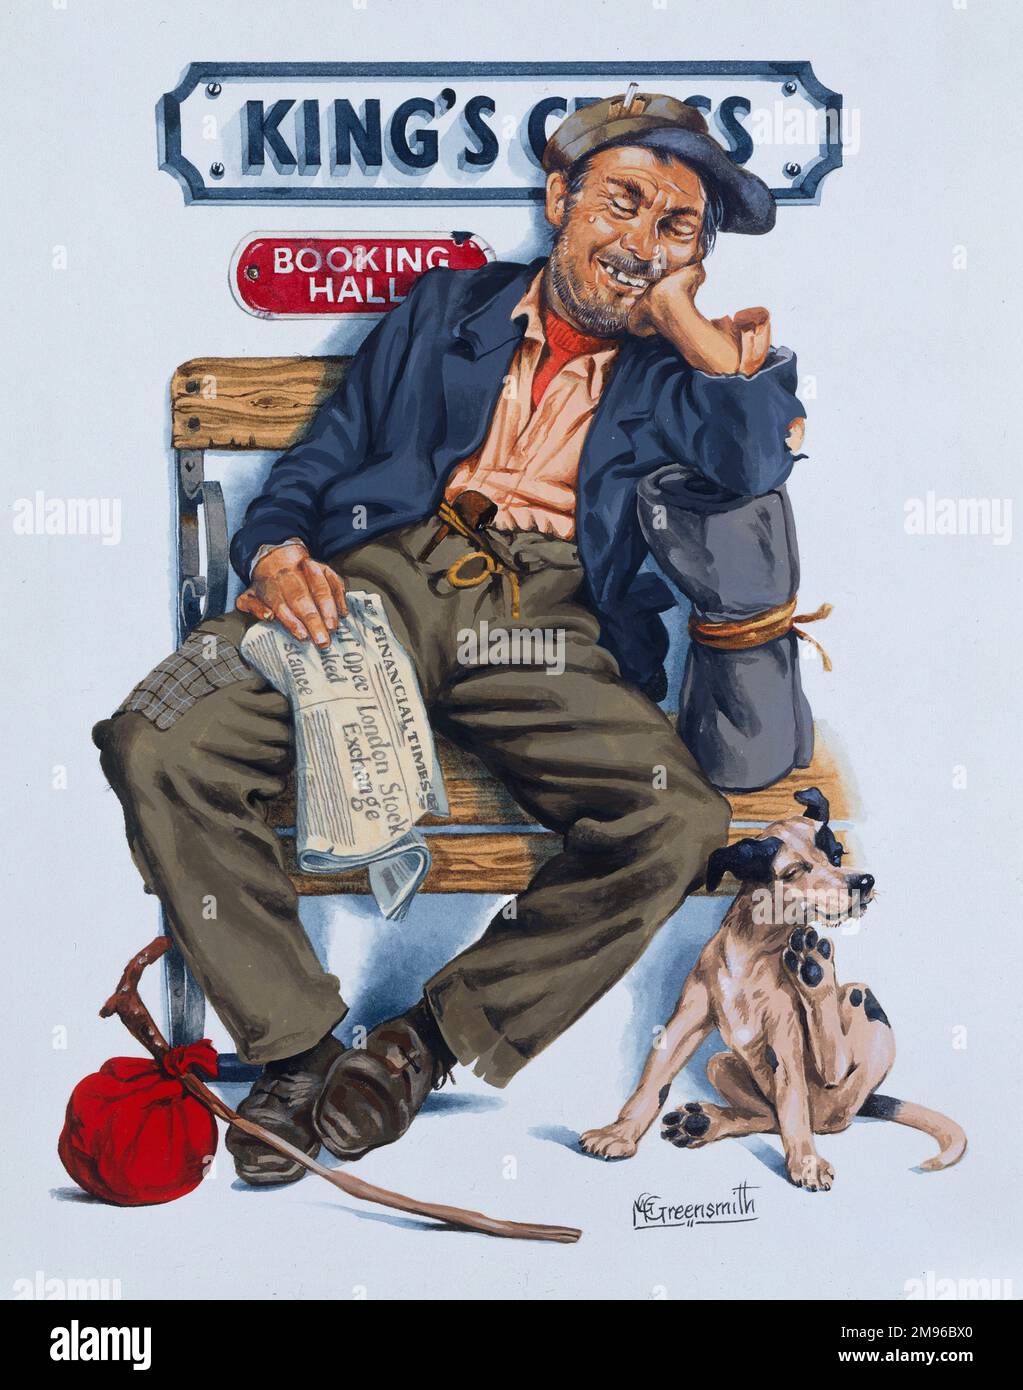 La série Railway Sleeper - Un snoozing tramp à la gare de King's Cross rêvant de la richesse comme il s'occupe d'un exemplaire du Financial Times. Peinture par Malcolm Greensmith Banque D'Images